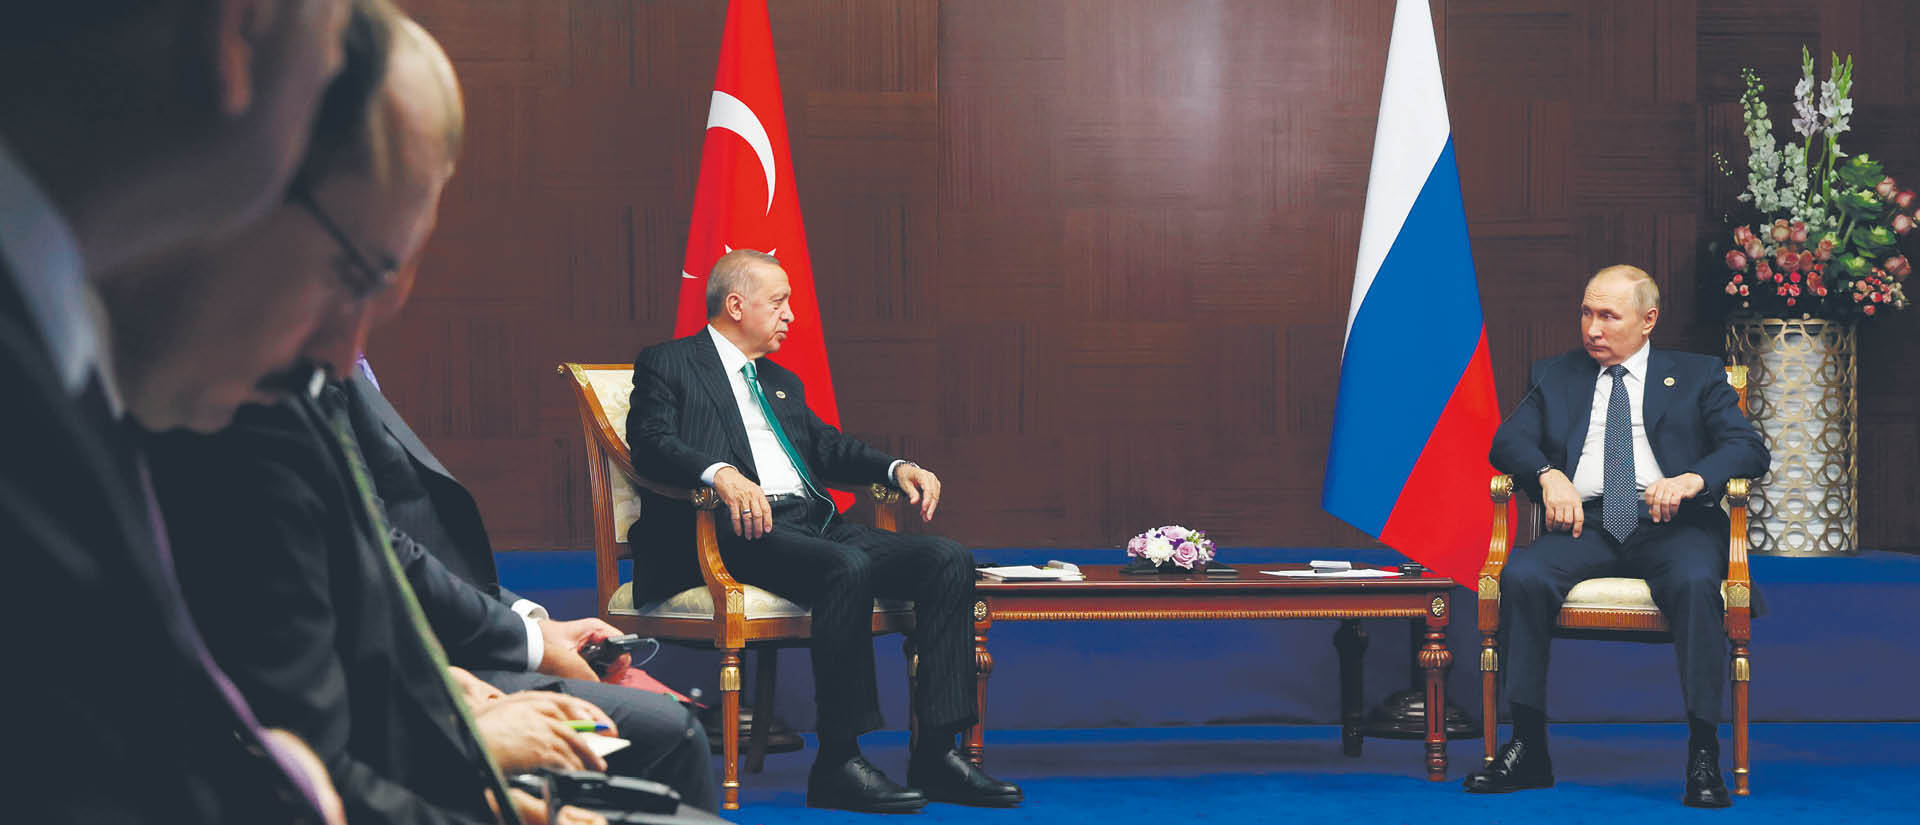 Prezydenci Turcji Recep Tayyip Erdoğan i Rosji Władimir Putin na październikowym spotkaniu w Astanie